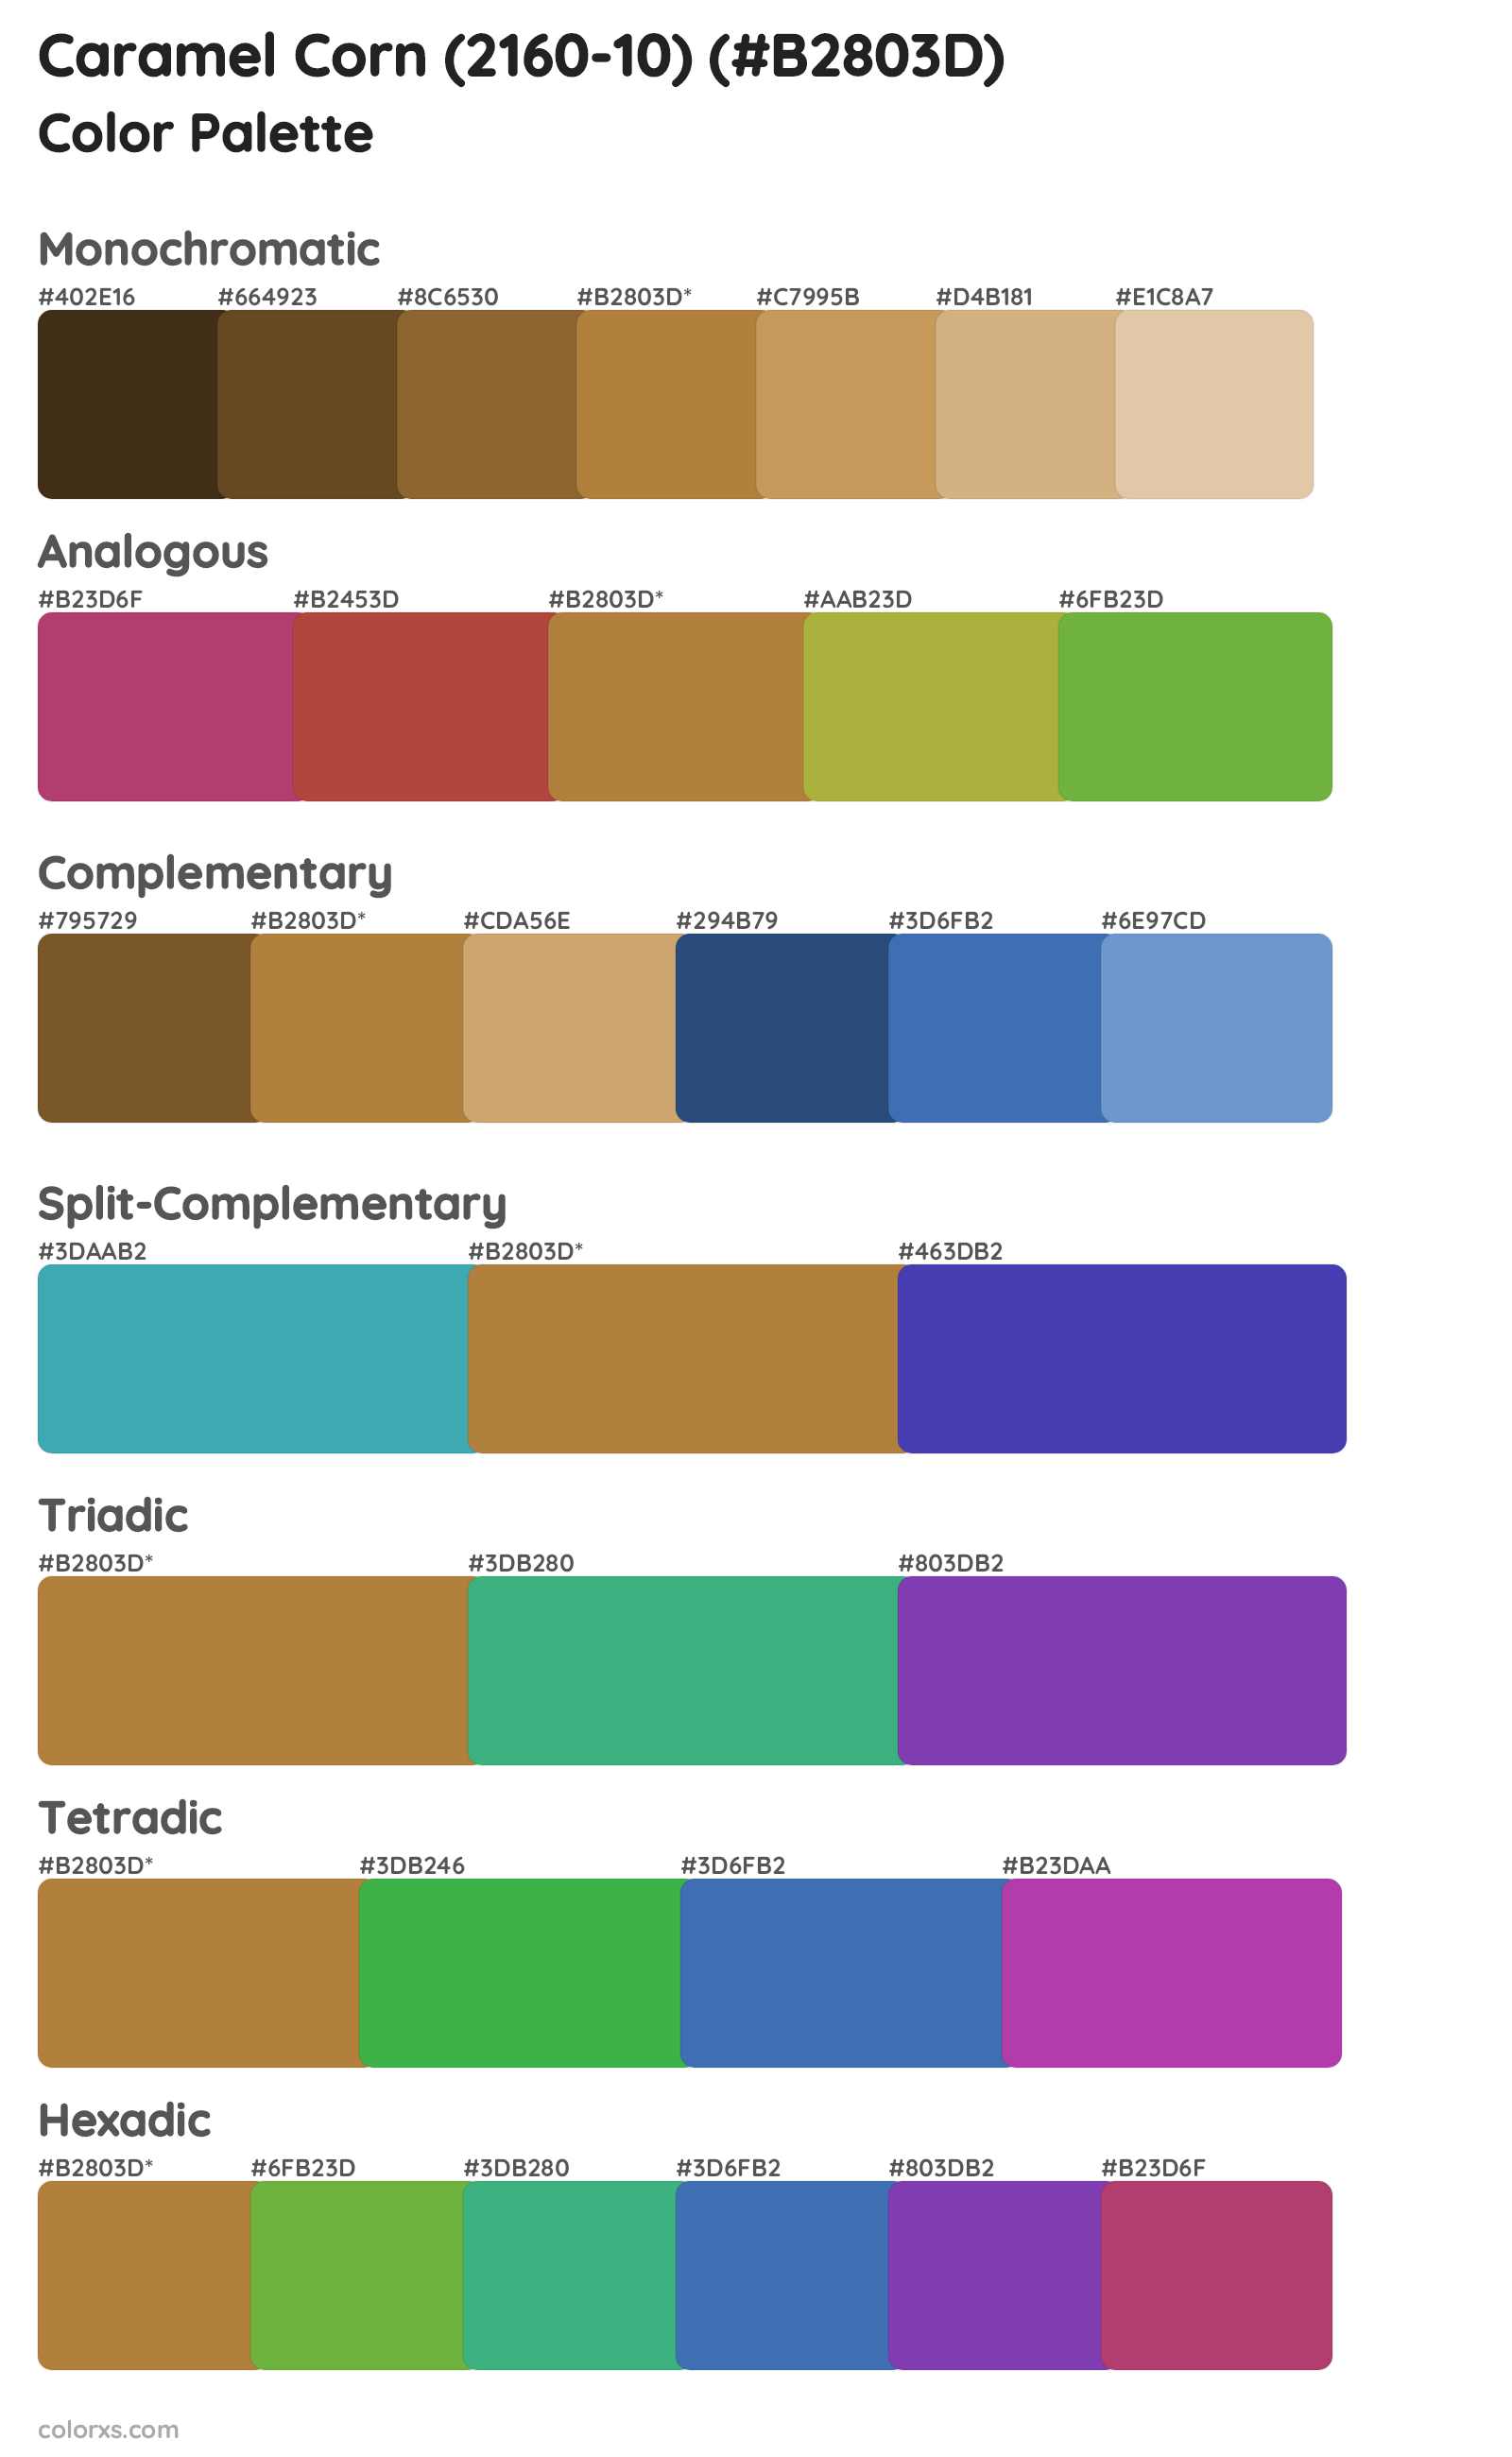 Caramel Corn (2160-10) Color Scheme Palettes